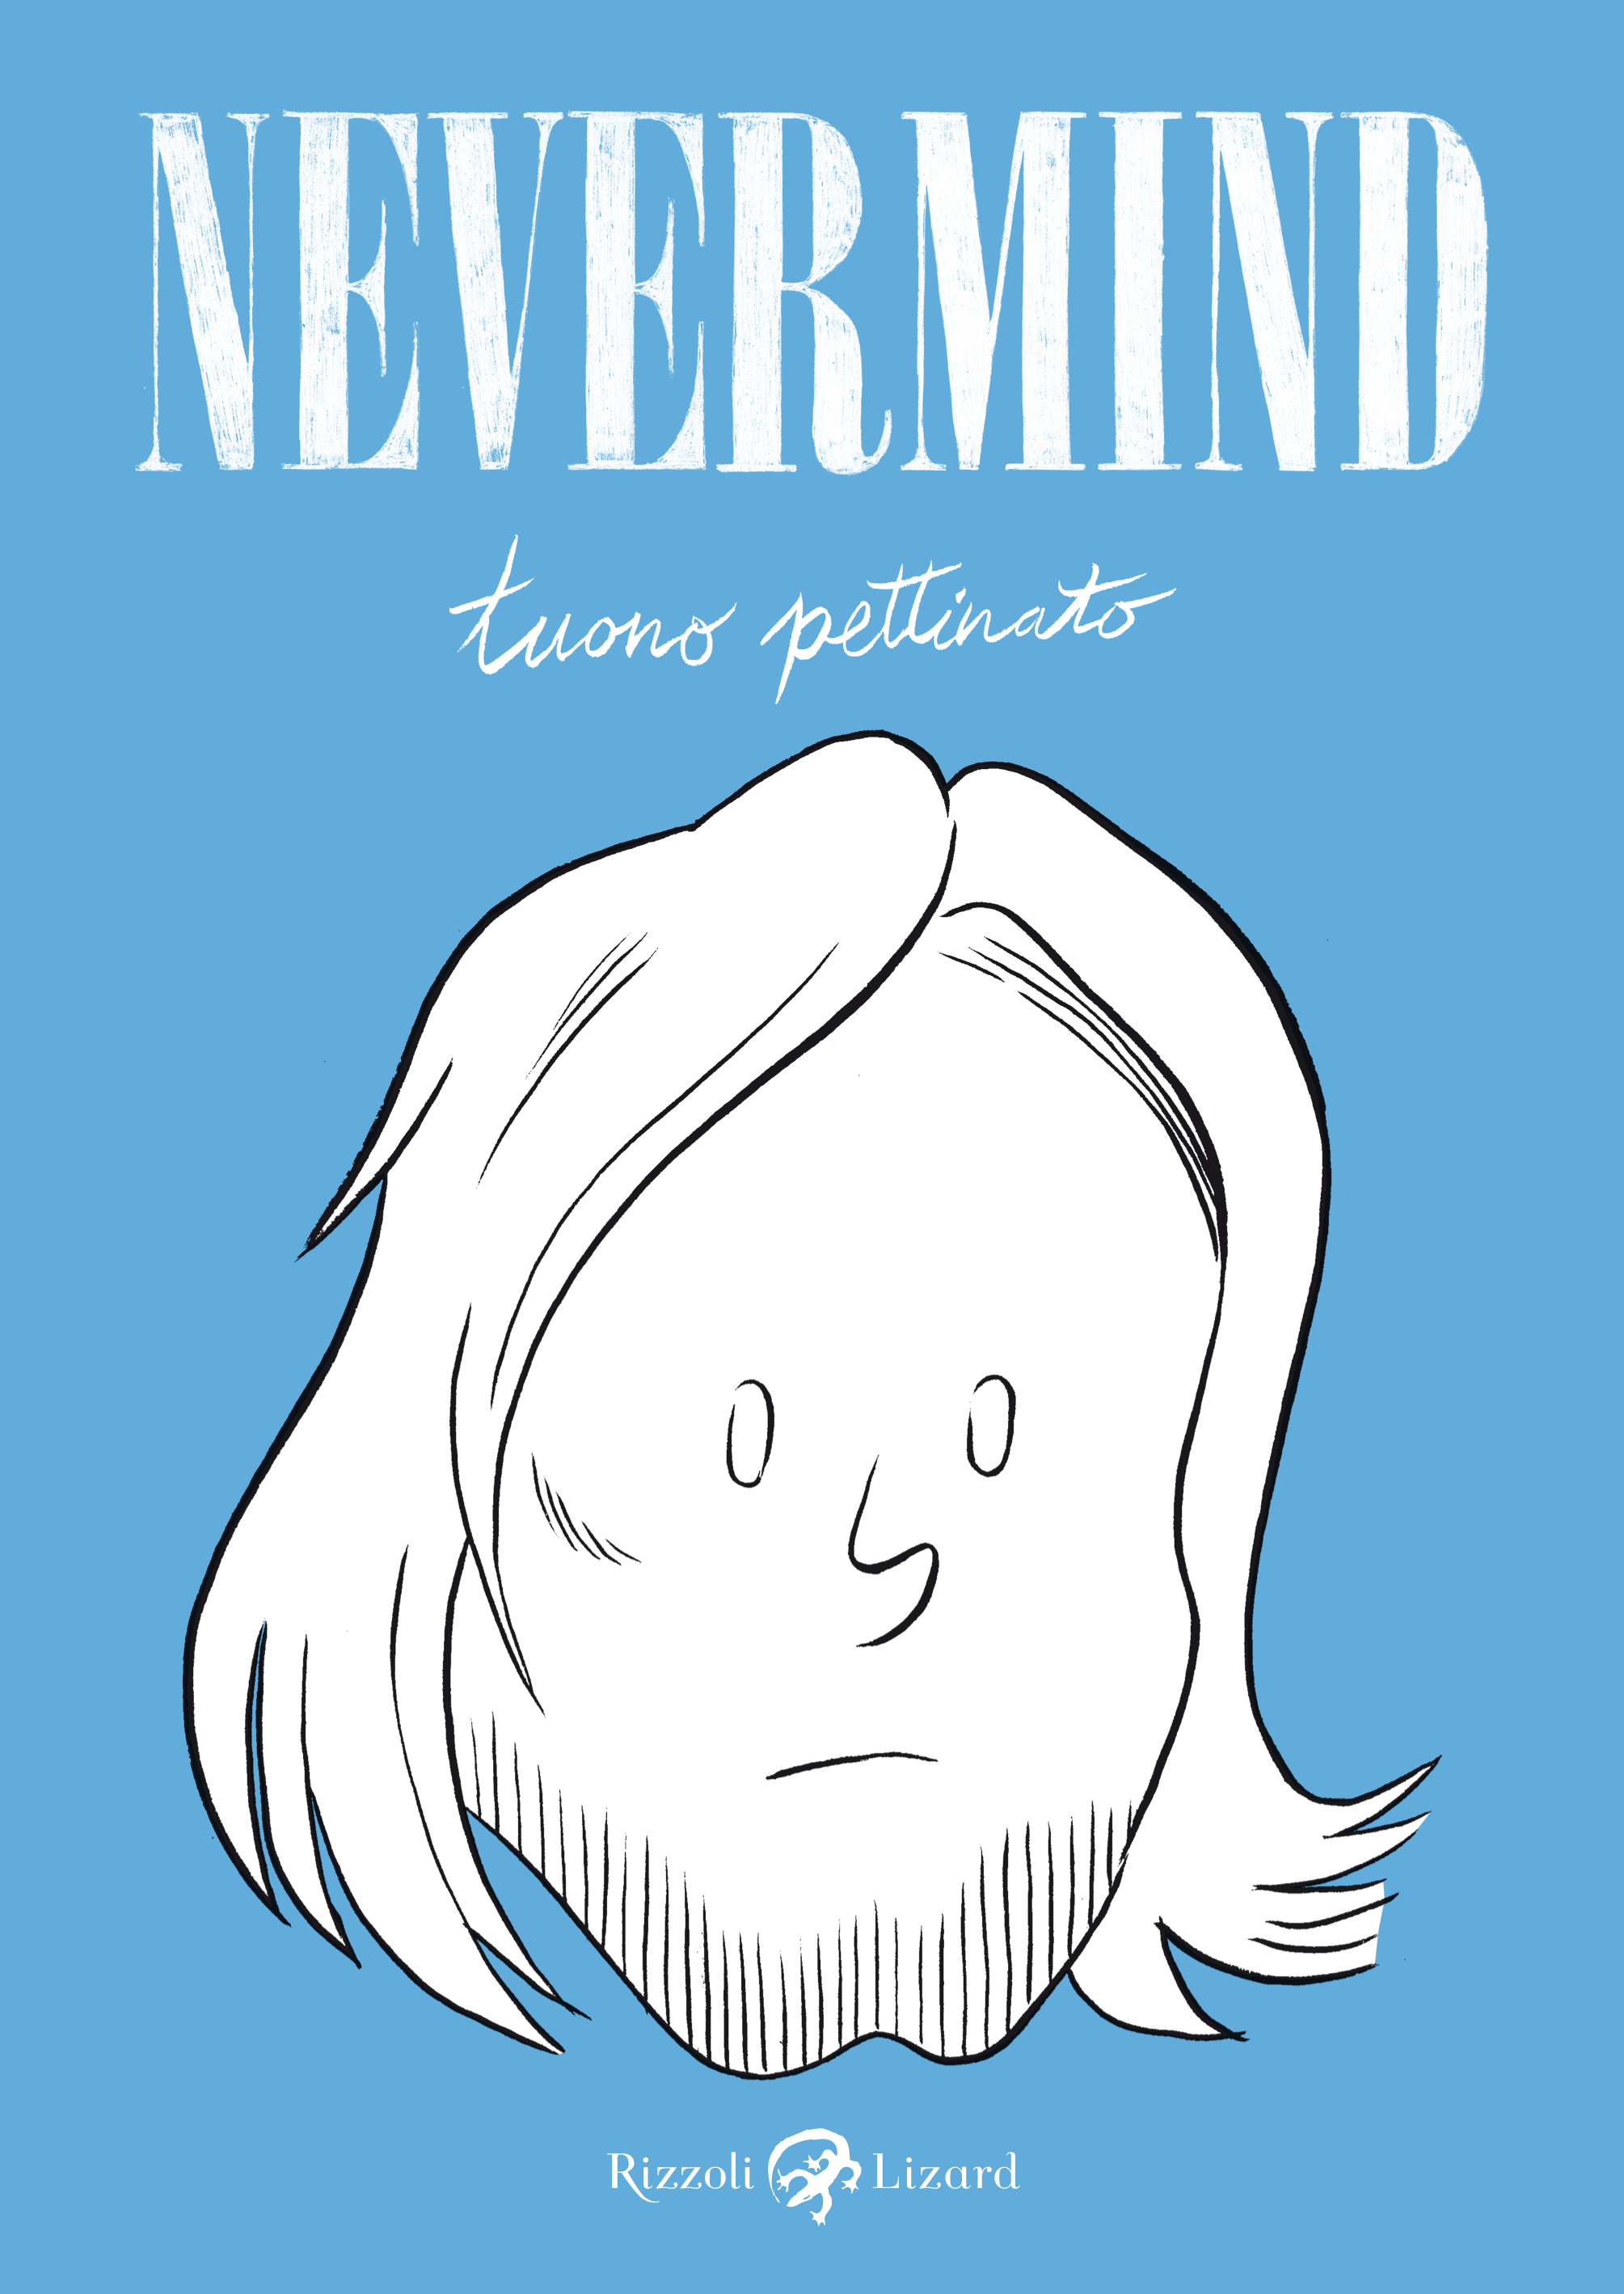 STORIE DISEGNATE di Valentina Gentile – “Nevermind” di Tuono Pettinato